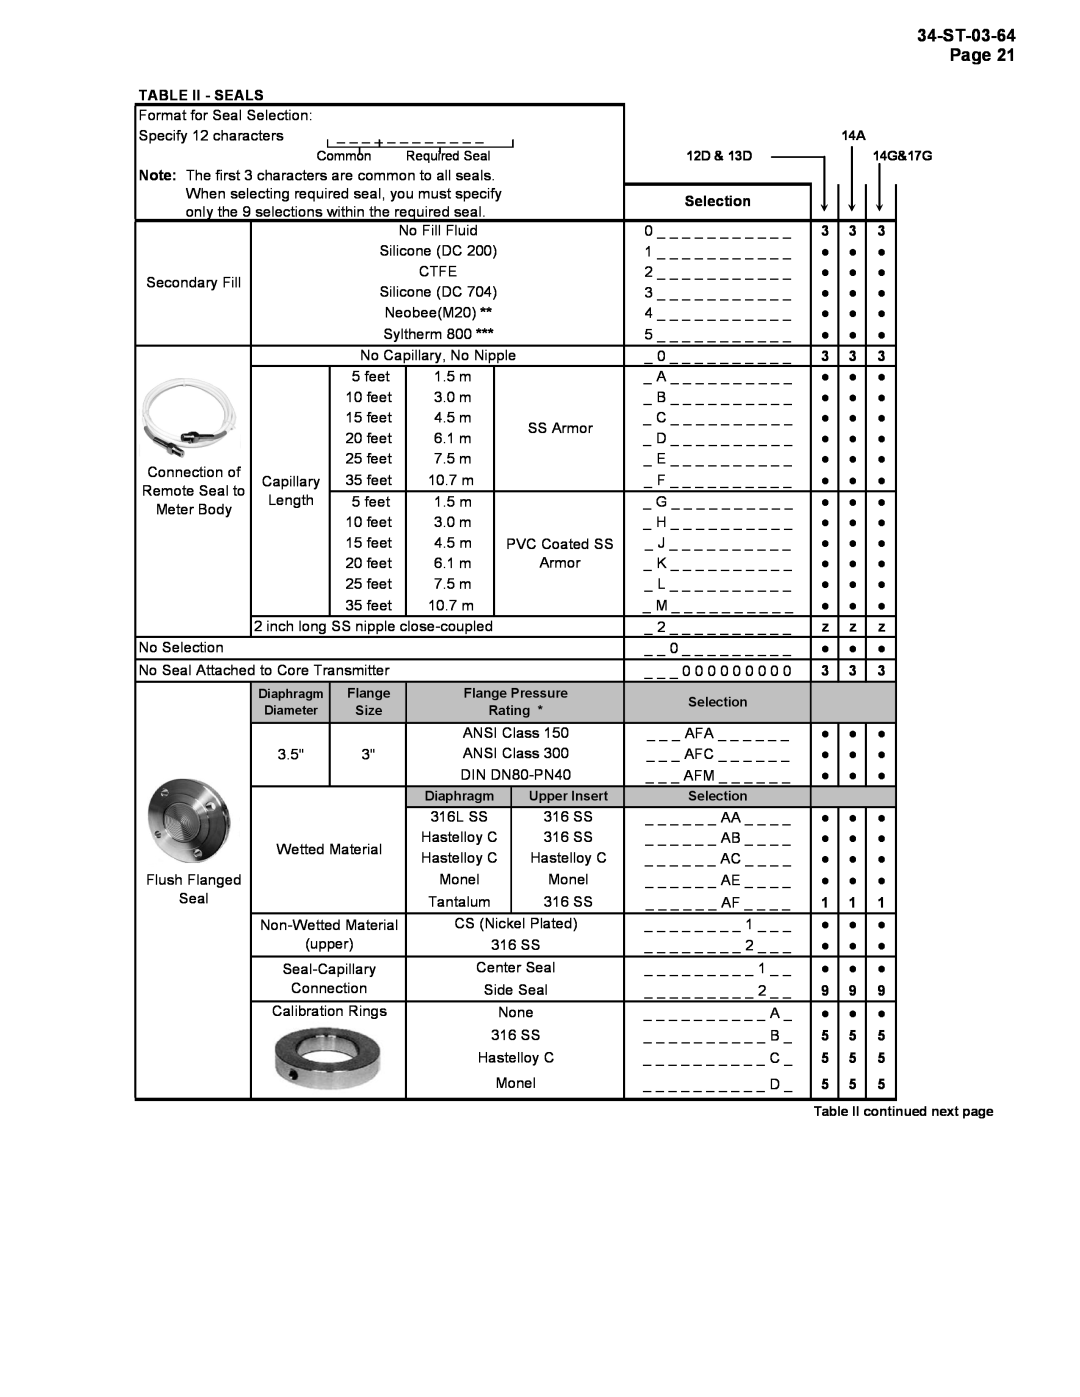 Honeywell STR12D warranty Table Ii - Seals 